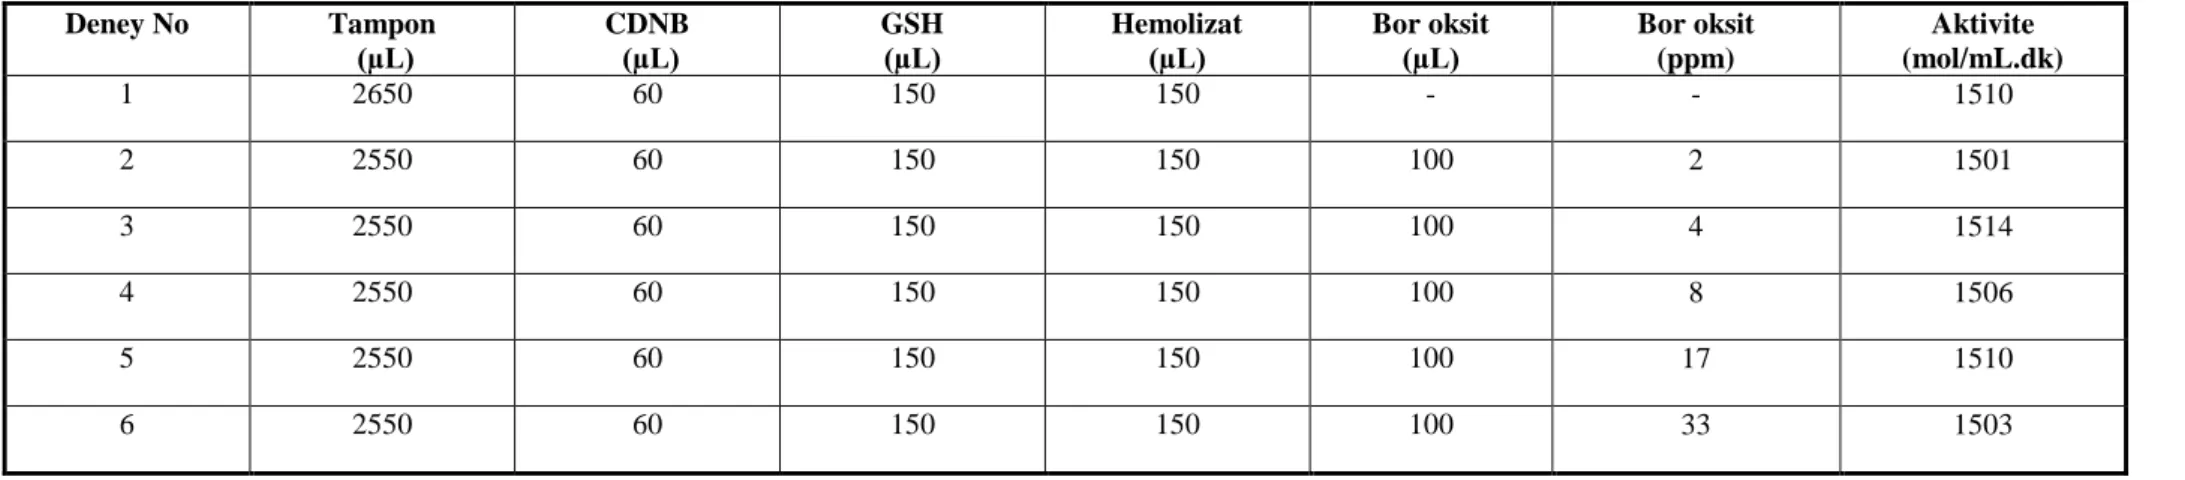 Tablo A.6: GST aktivitesi ve GST aktivitesi üzerine bor oksit etkisine ait deneysel veriler; [fosfat tamponu]=0,05 M; [GSH]=0,1 M;[CDNB]=30mM